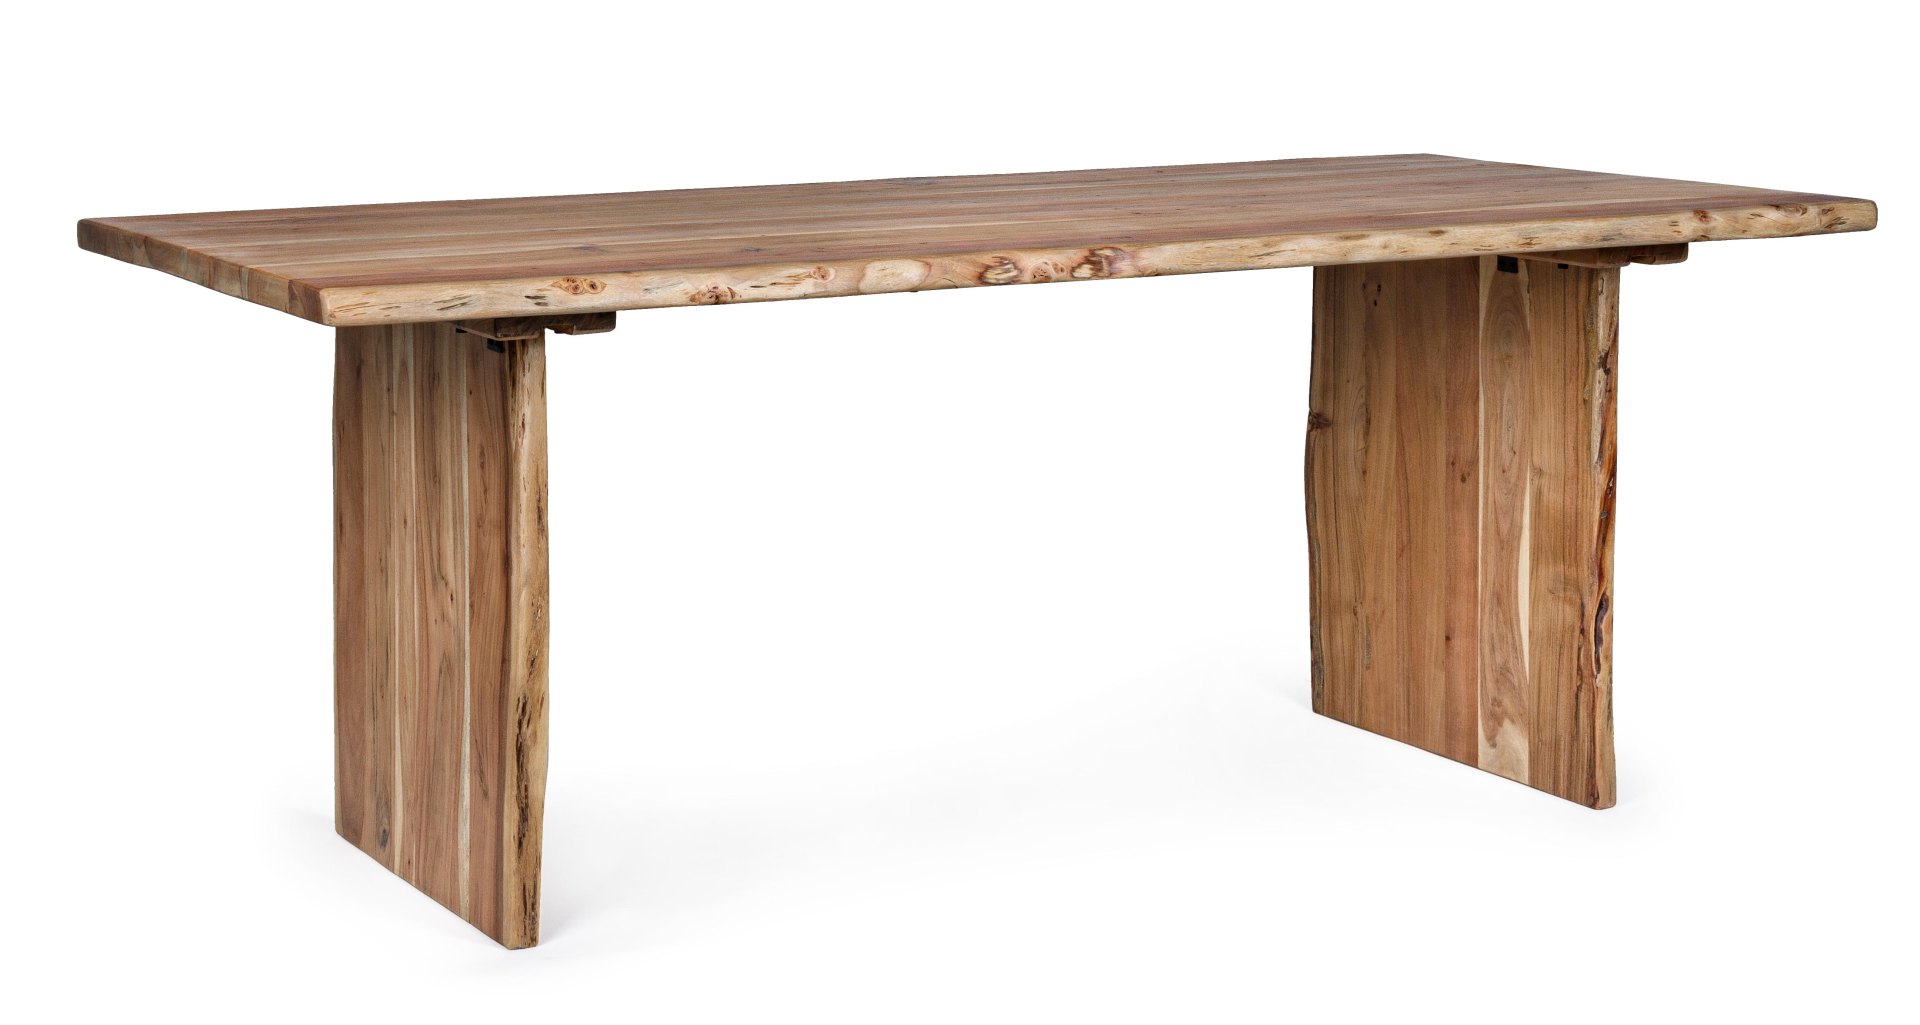 Der Esstisch Eneas überzeugt mit seinem moderndem Design. Gefertigt wurde er aus Akazienholz, welches einen natürlichen Farbton besitzt. Das Gestell des Tisches ist auch aus Akazienholz und ist in eine natürliche Farbe. Der Tisch besitzt eine Breite von 2